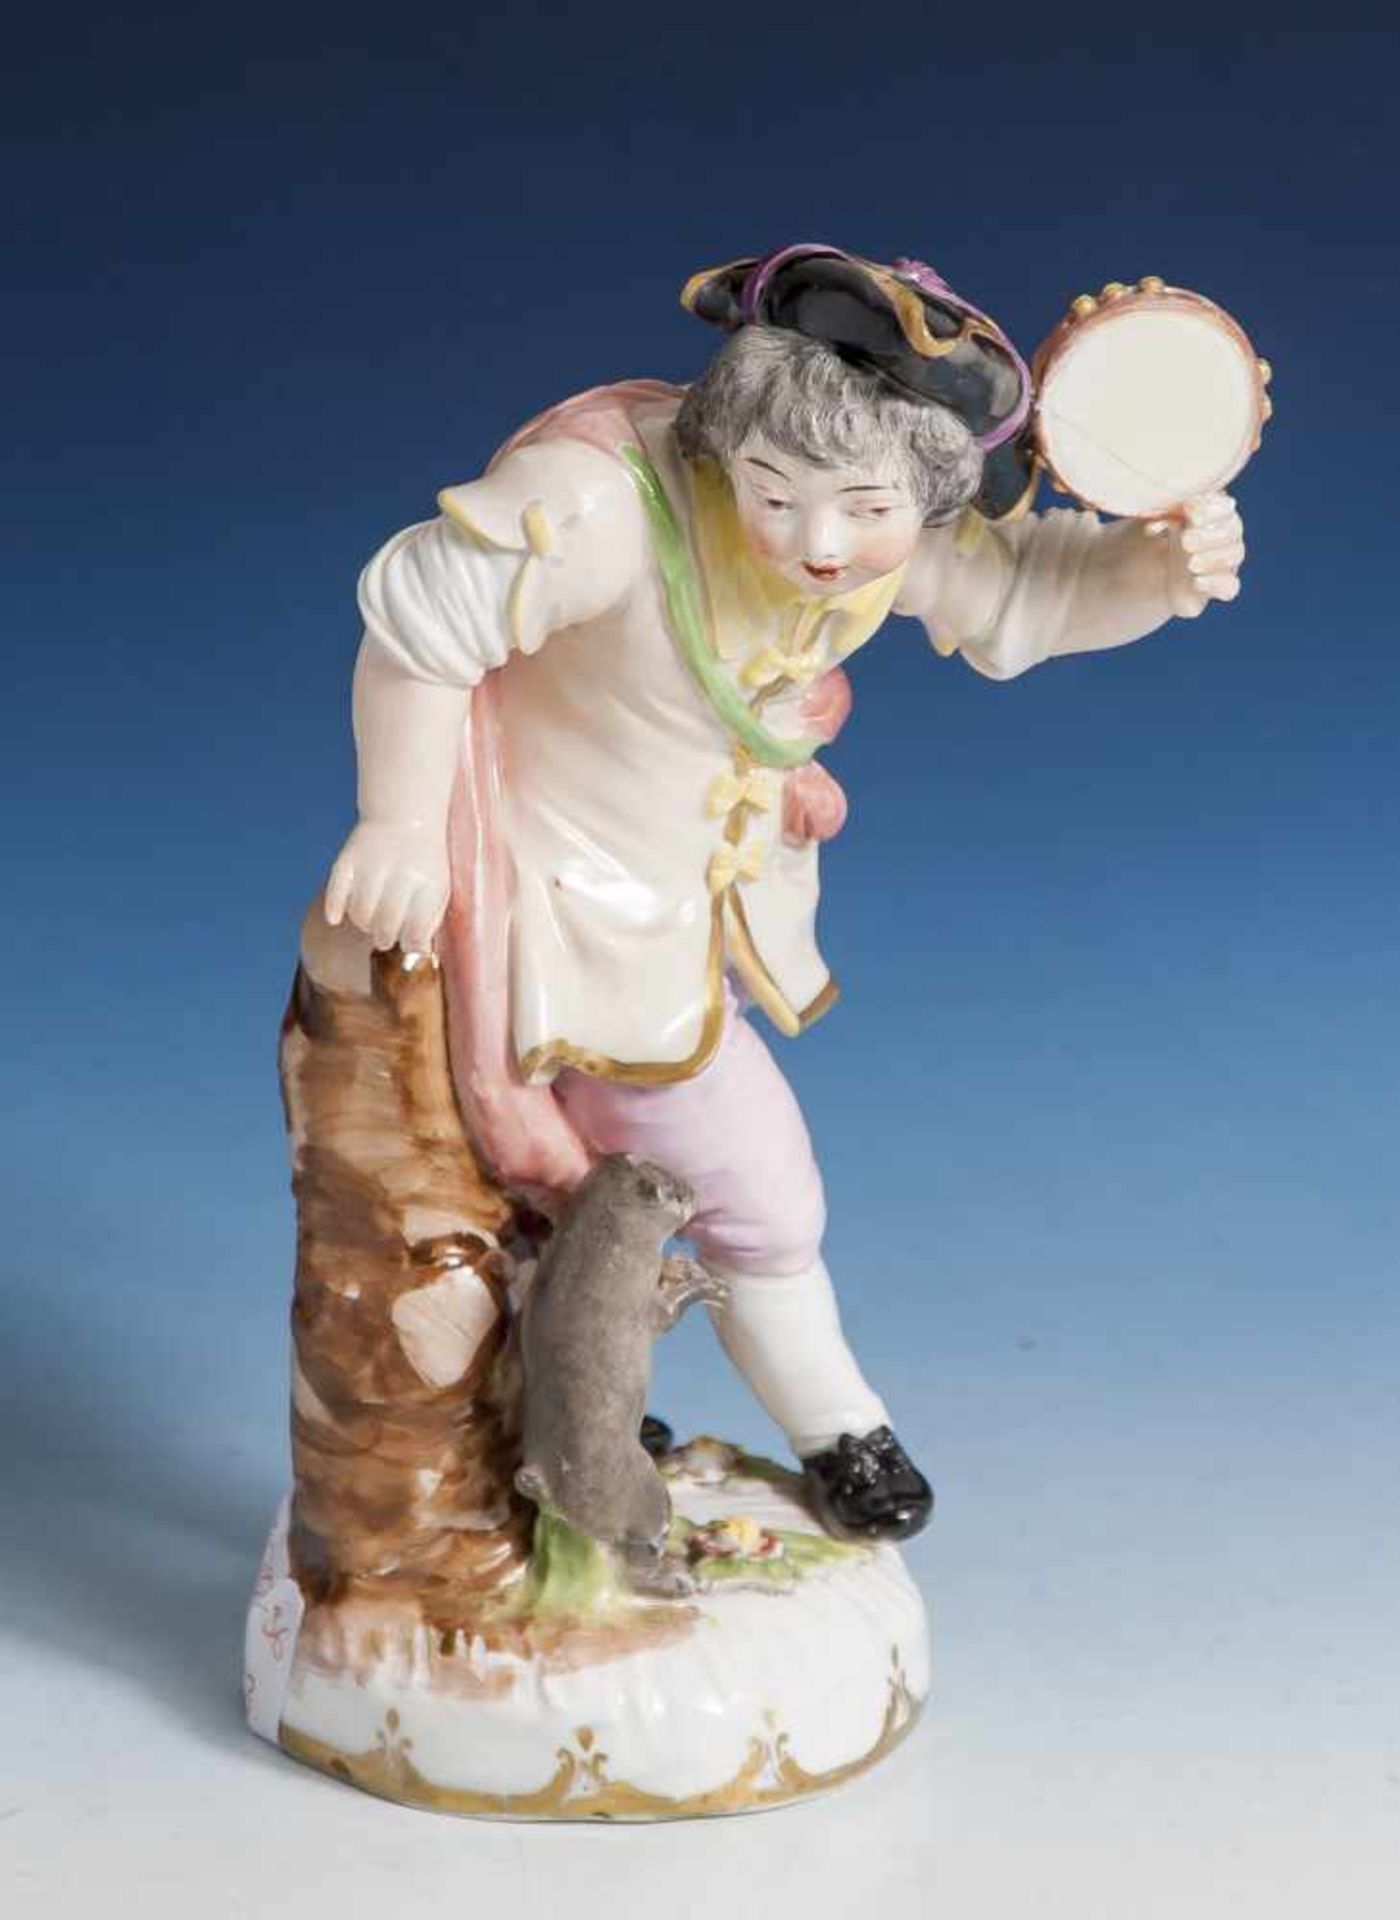 Tamburinspieler mit Mops, Wiener Porzellanmanufaktur, Ende 18. Jahrhundert, unterglasurblaue